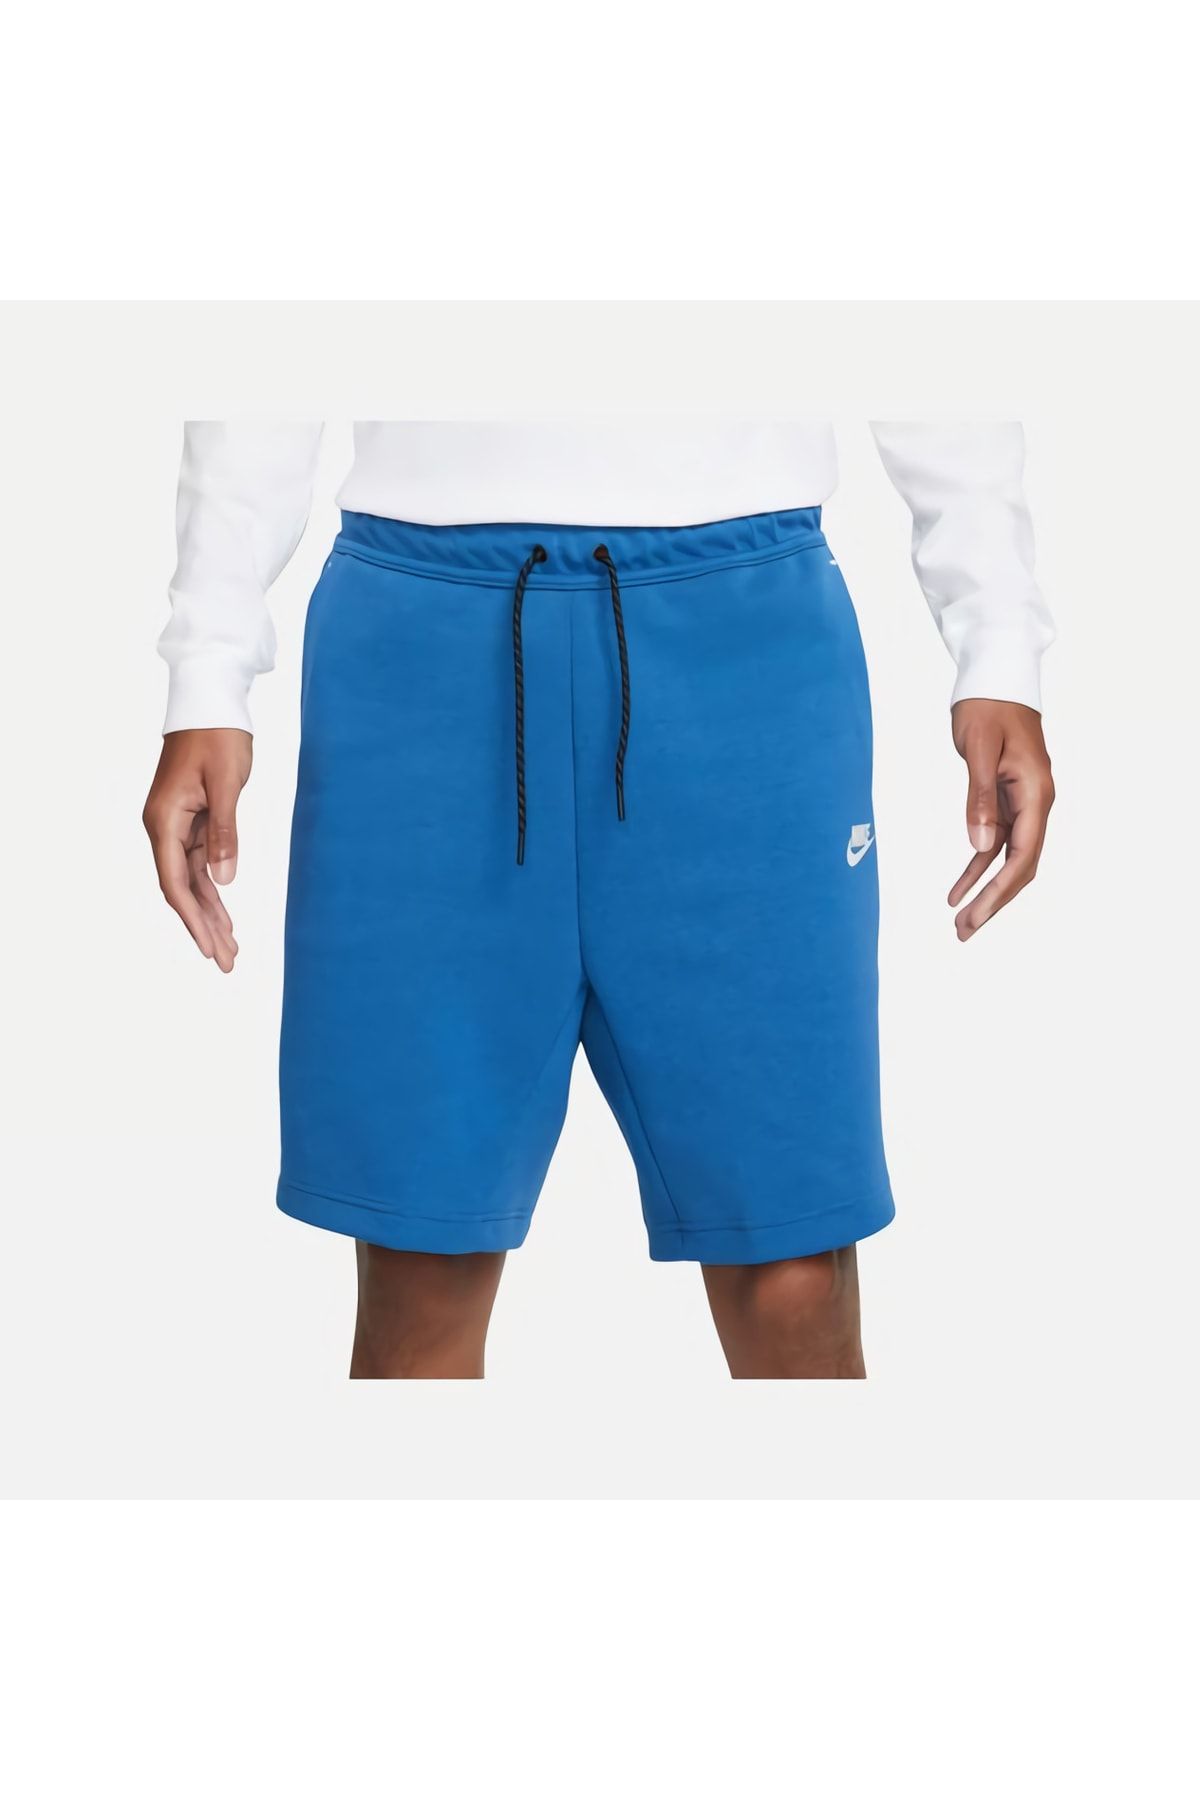 Nike Sportswear Tech Fleece Mavi Erkek Şortu Cu4503-407